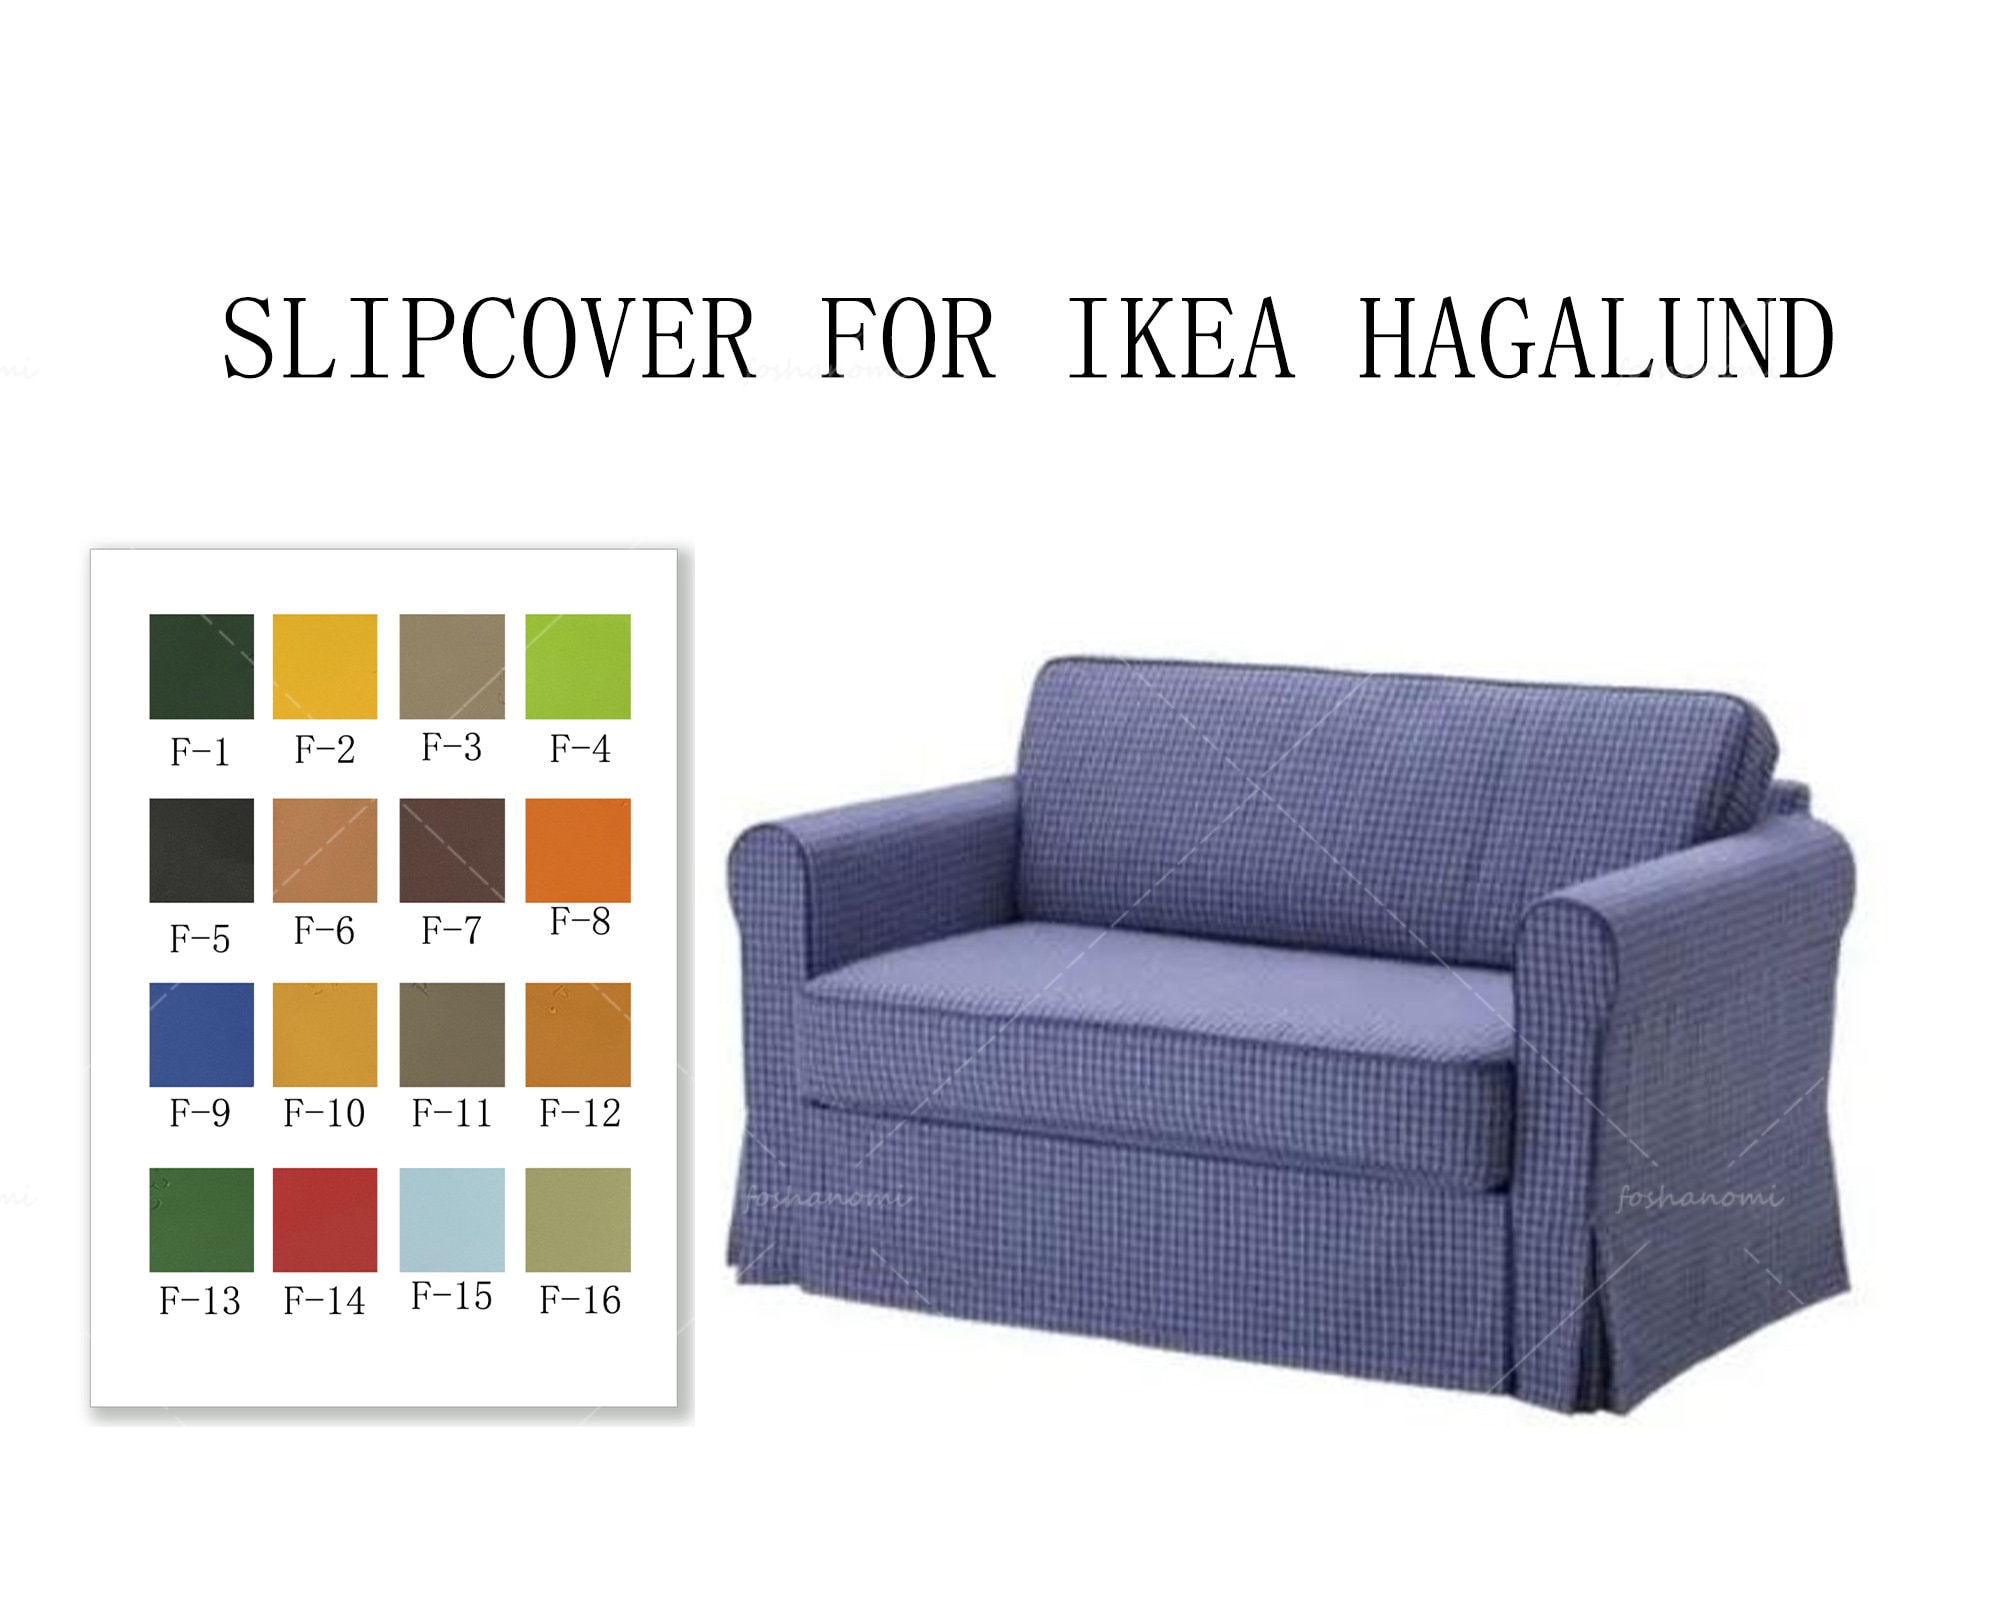 Sofa Covers for IKEA Seats Bedikea - Etsy